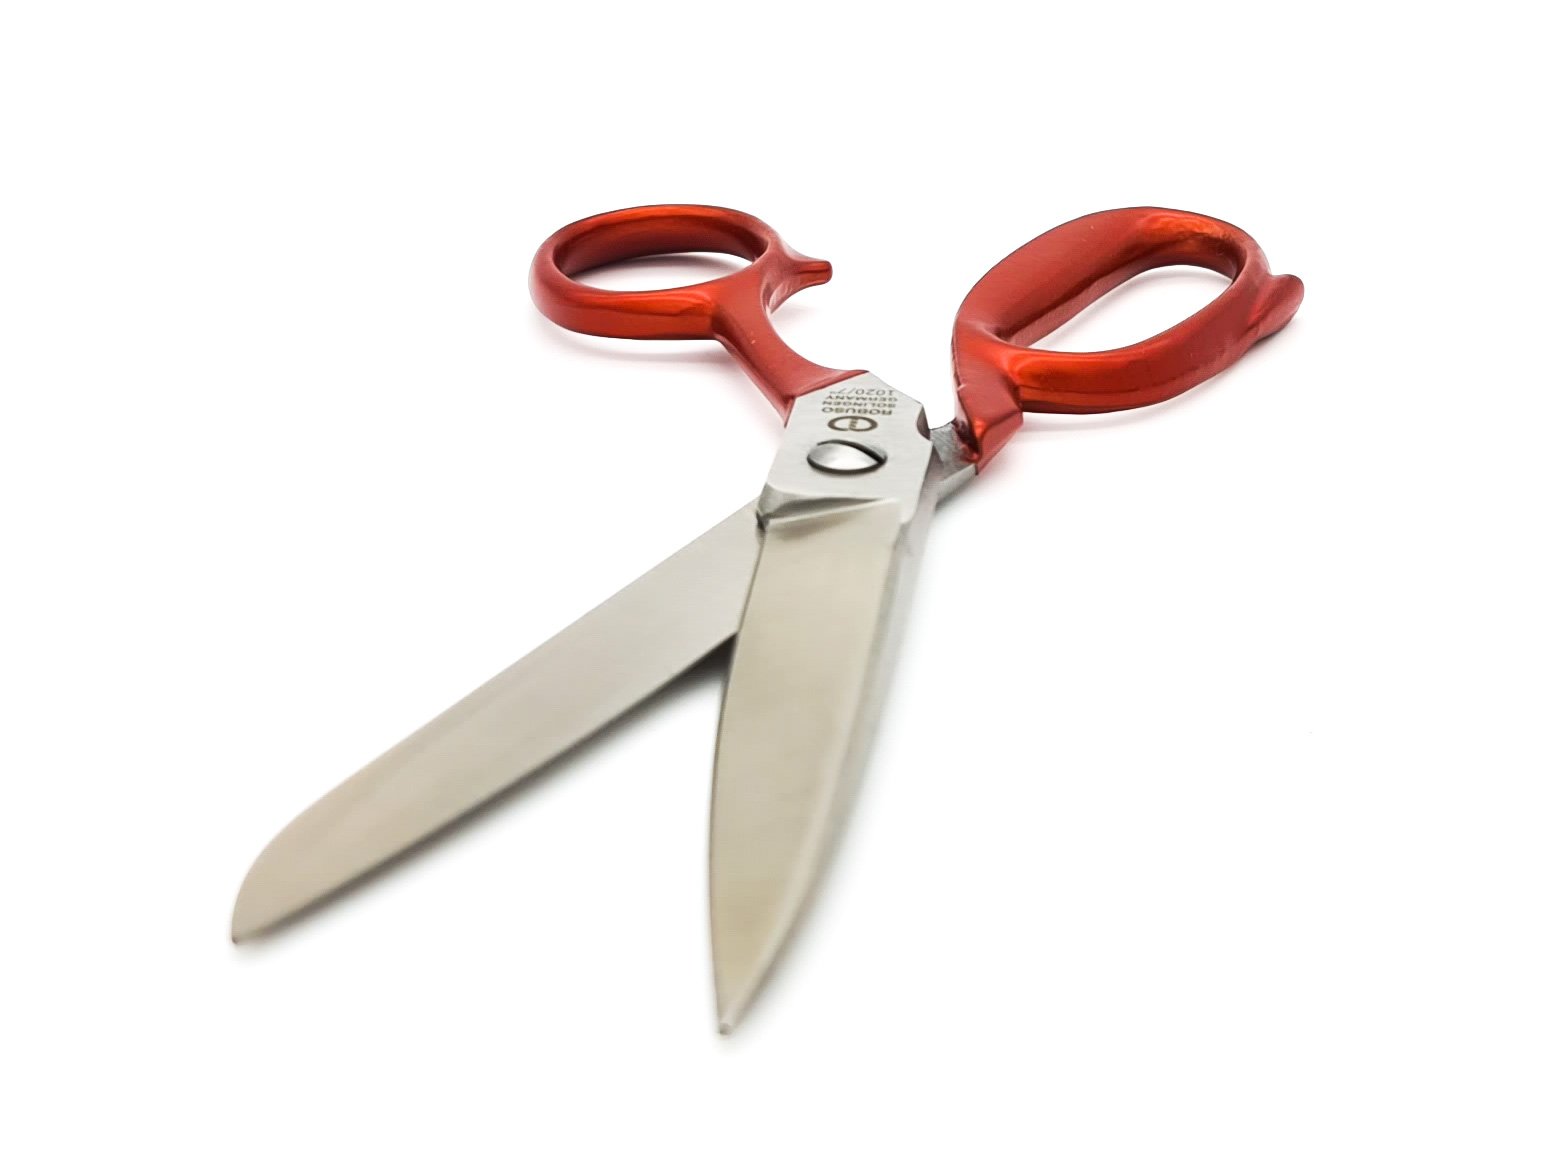 Tailor scissors, 7" / 18.5 cm